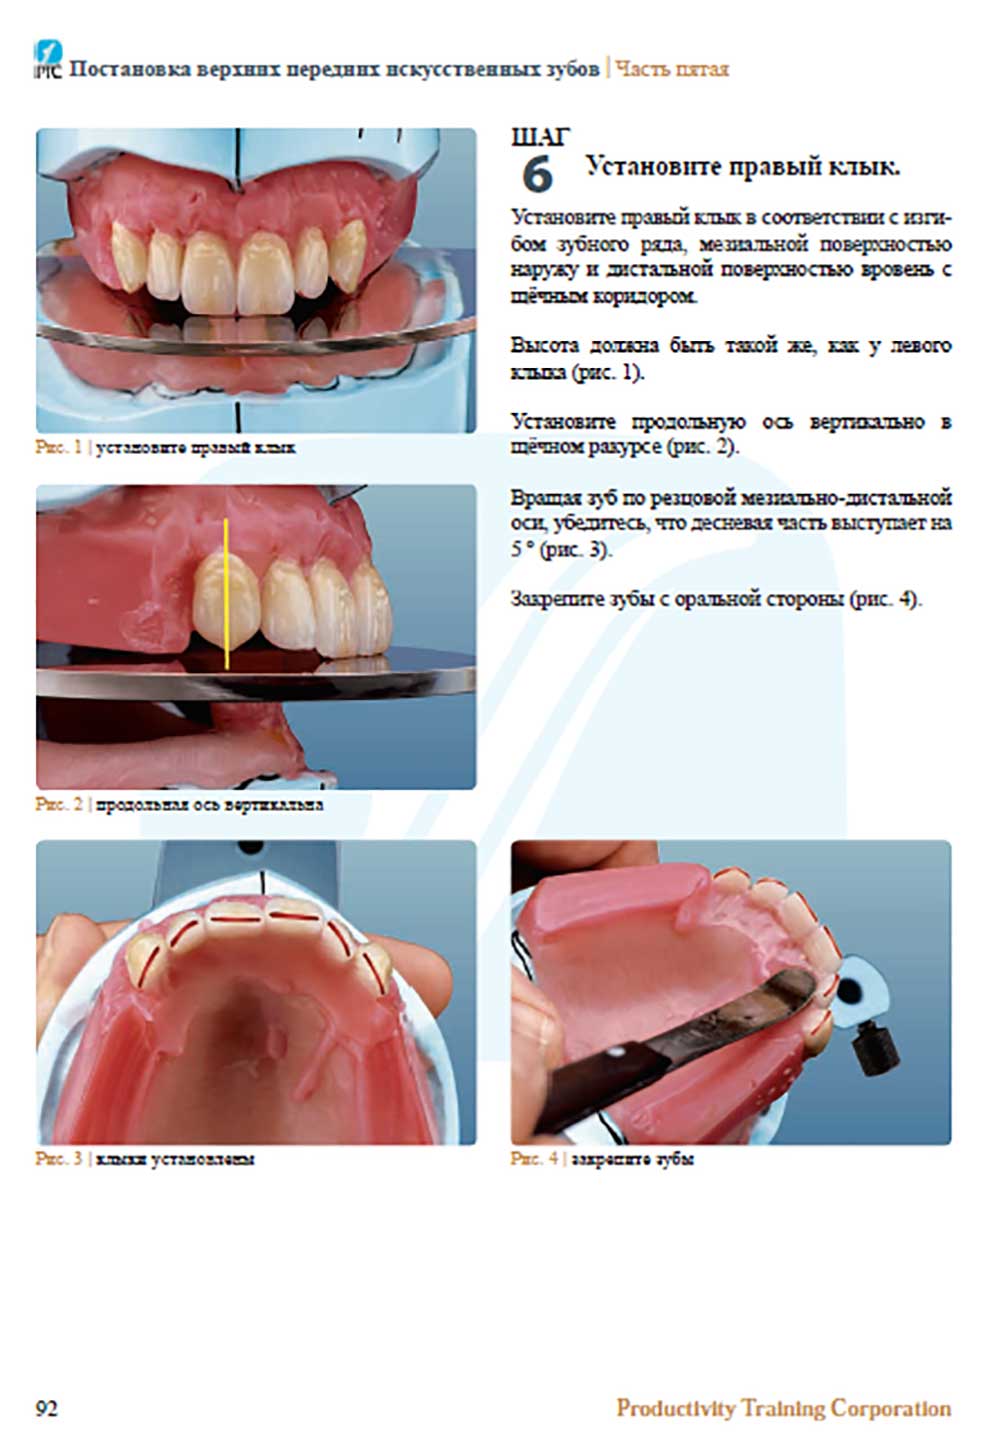 Постановка верхних передних искусственных зубов